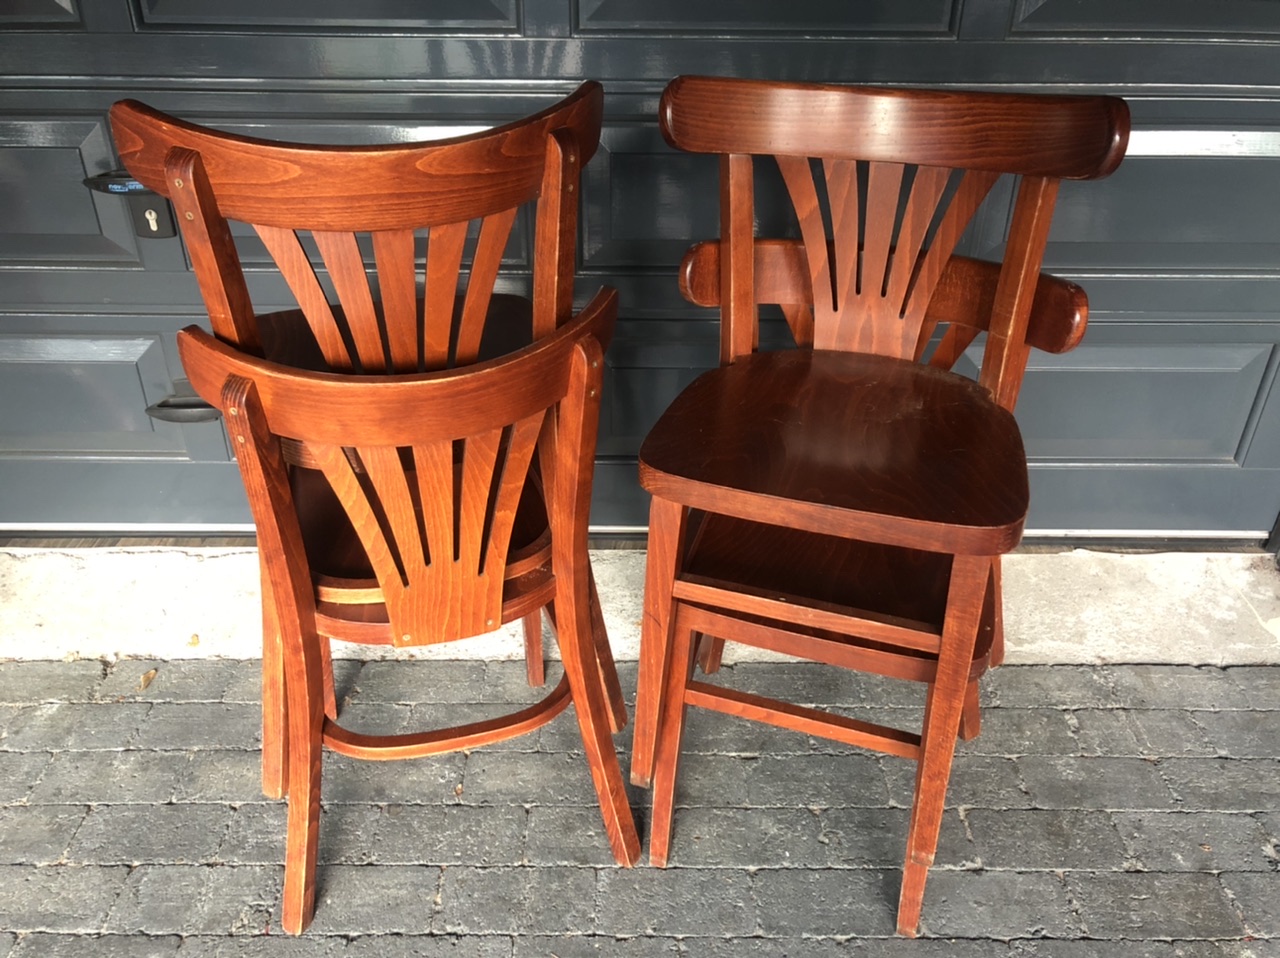 Stapelbare cafestoelen horeca stoelen restaurant goedkoop hout stapelstoelen kantine kroeg amsterdam